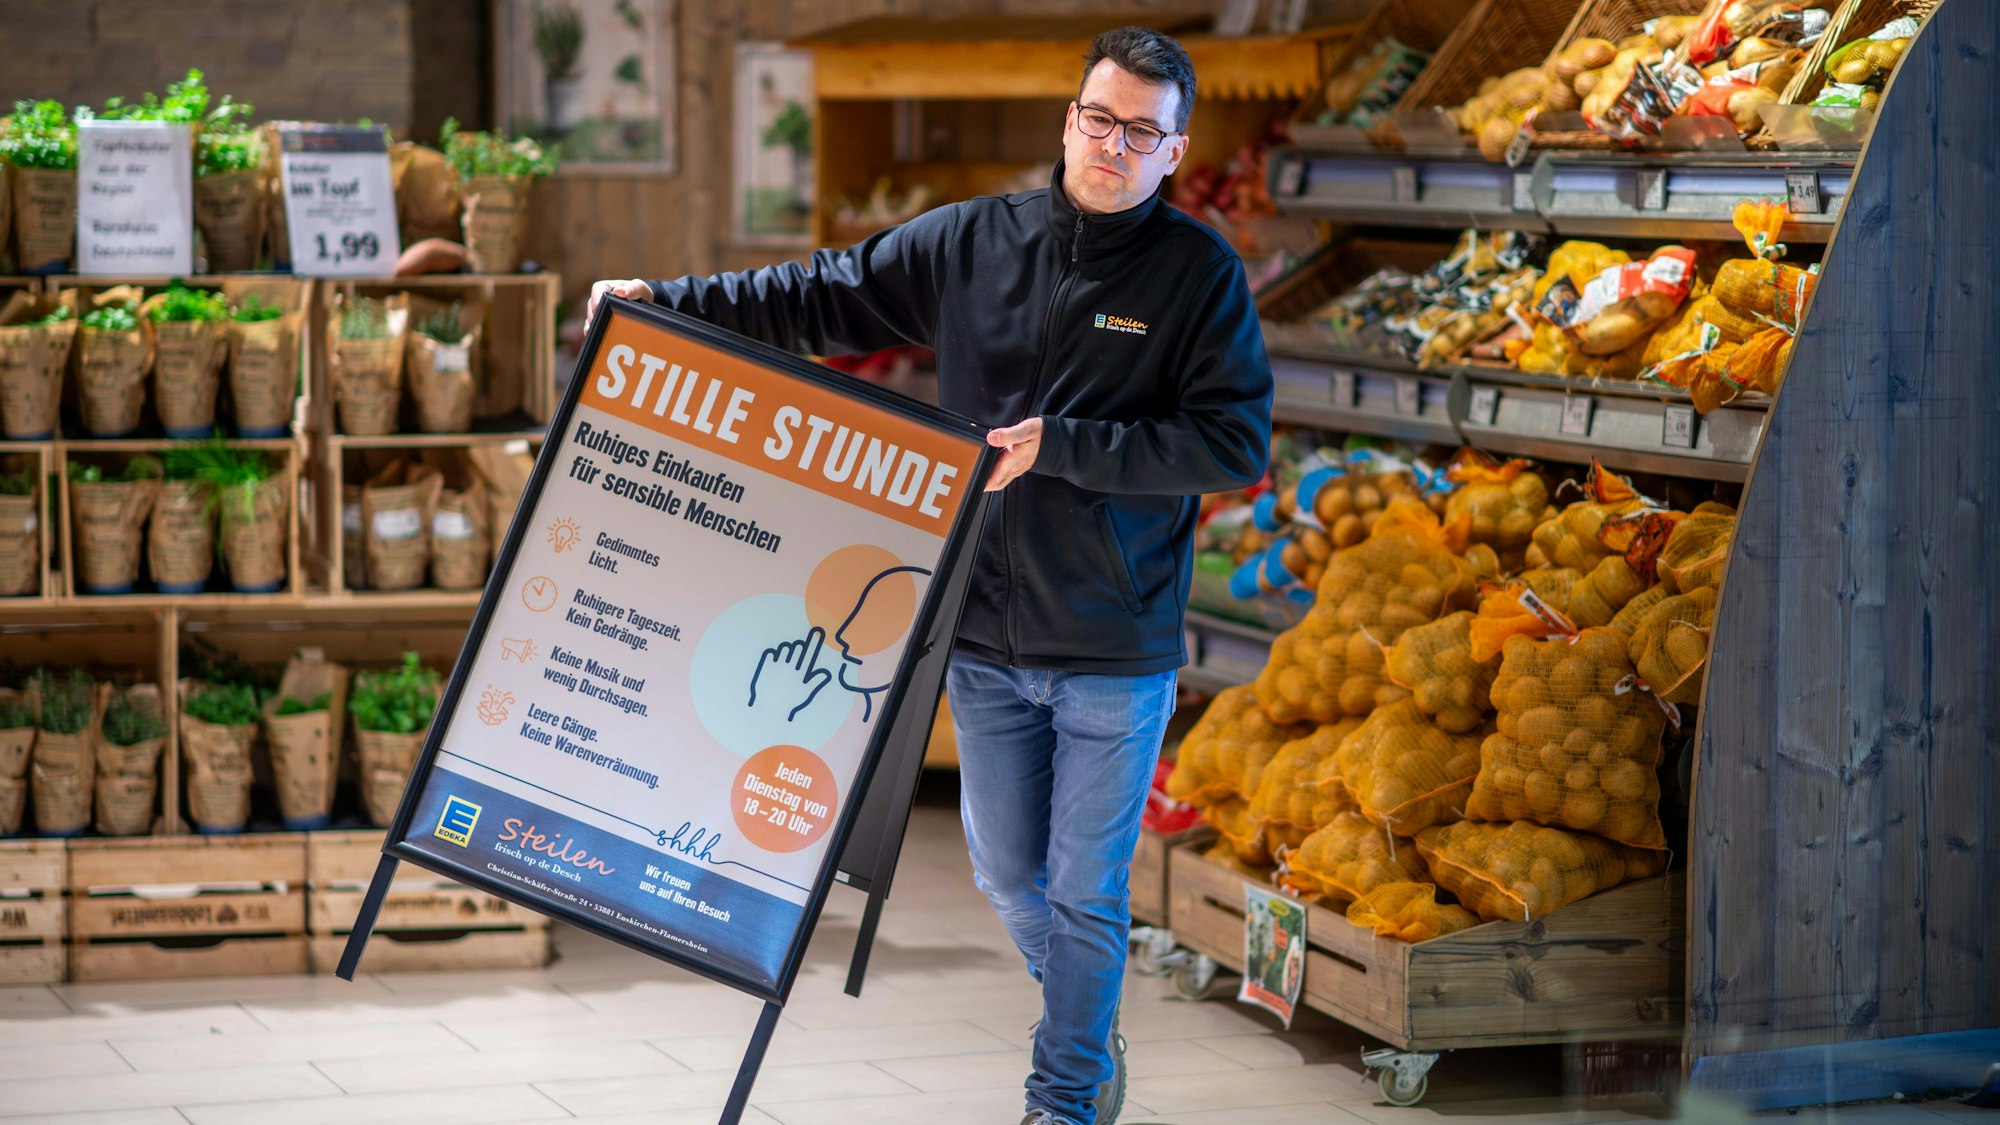 Dirk Steilen trägt in seinem Edeka-Markt einen Aufsteller, der auf die Stille Stunde hinweist, in der auf grelles Licht und Werbung verzichtet wird.